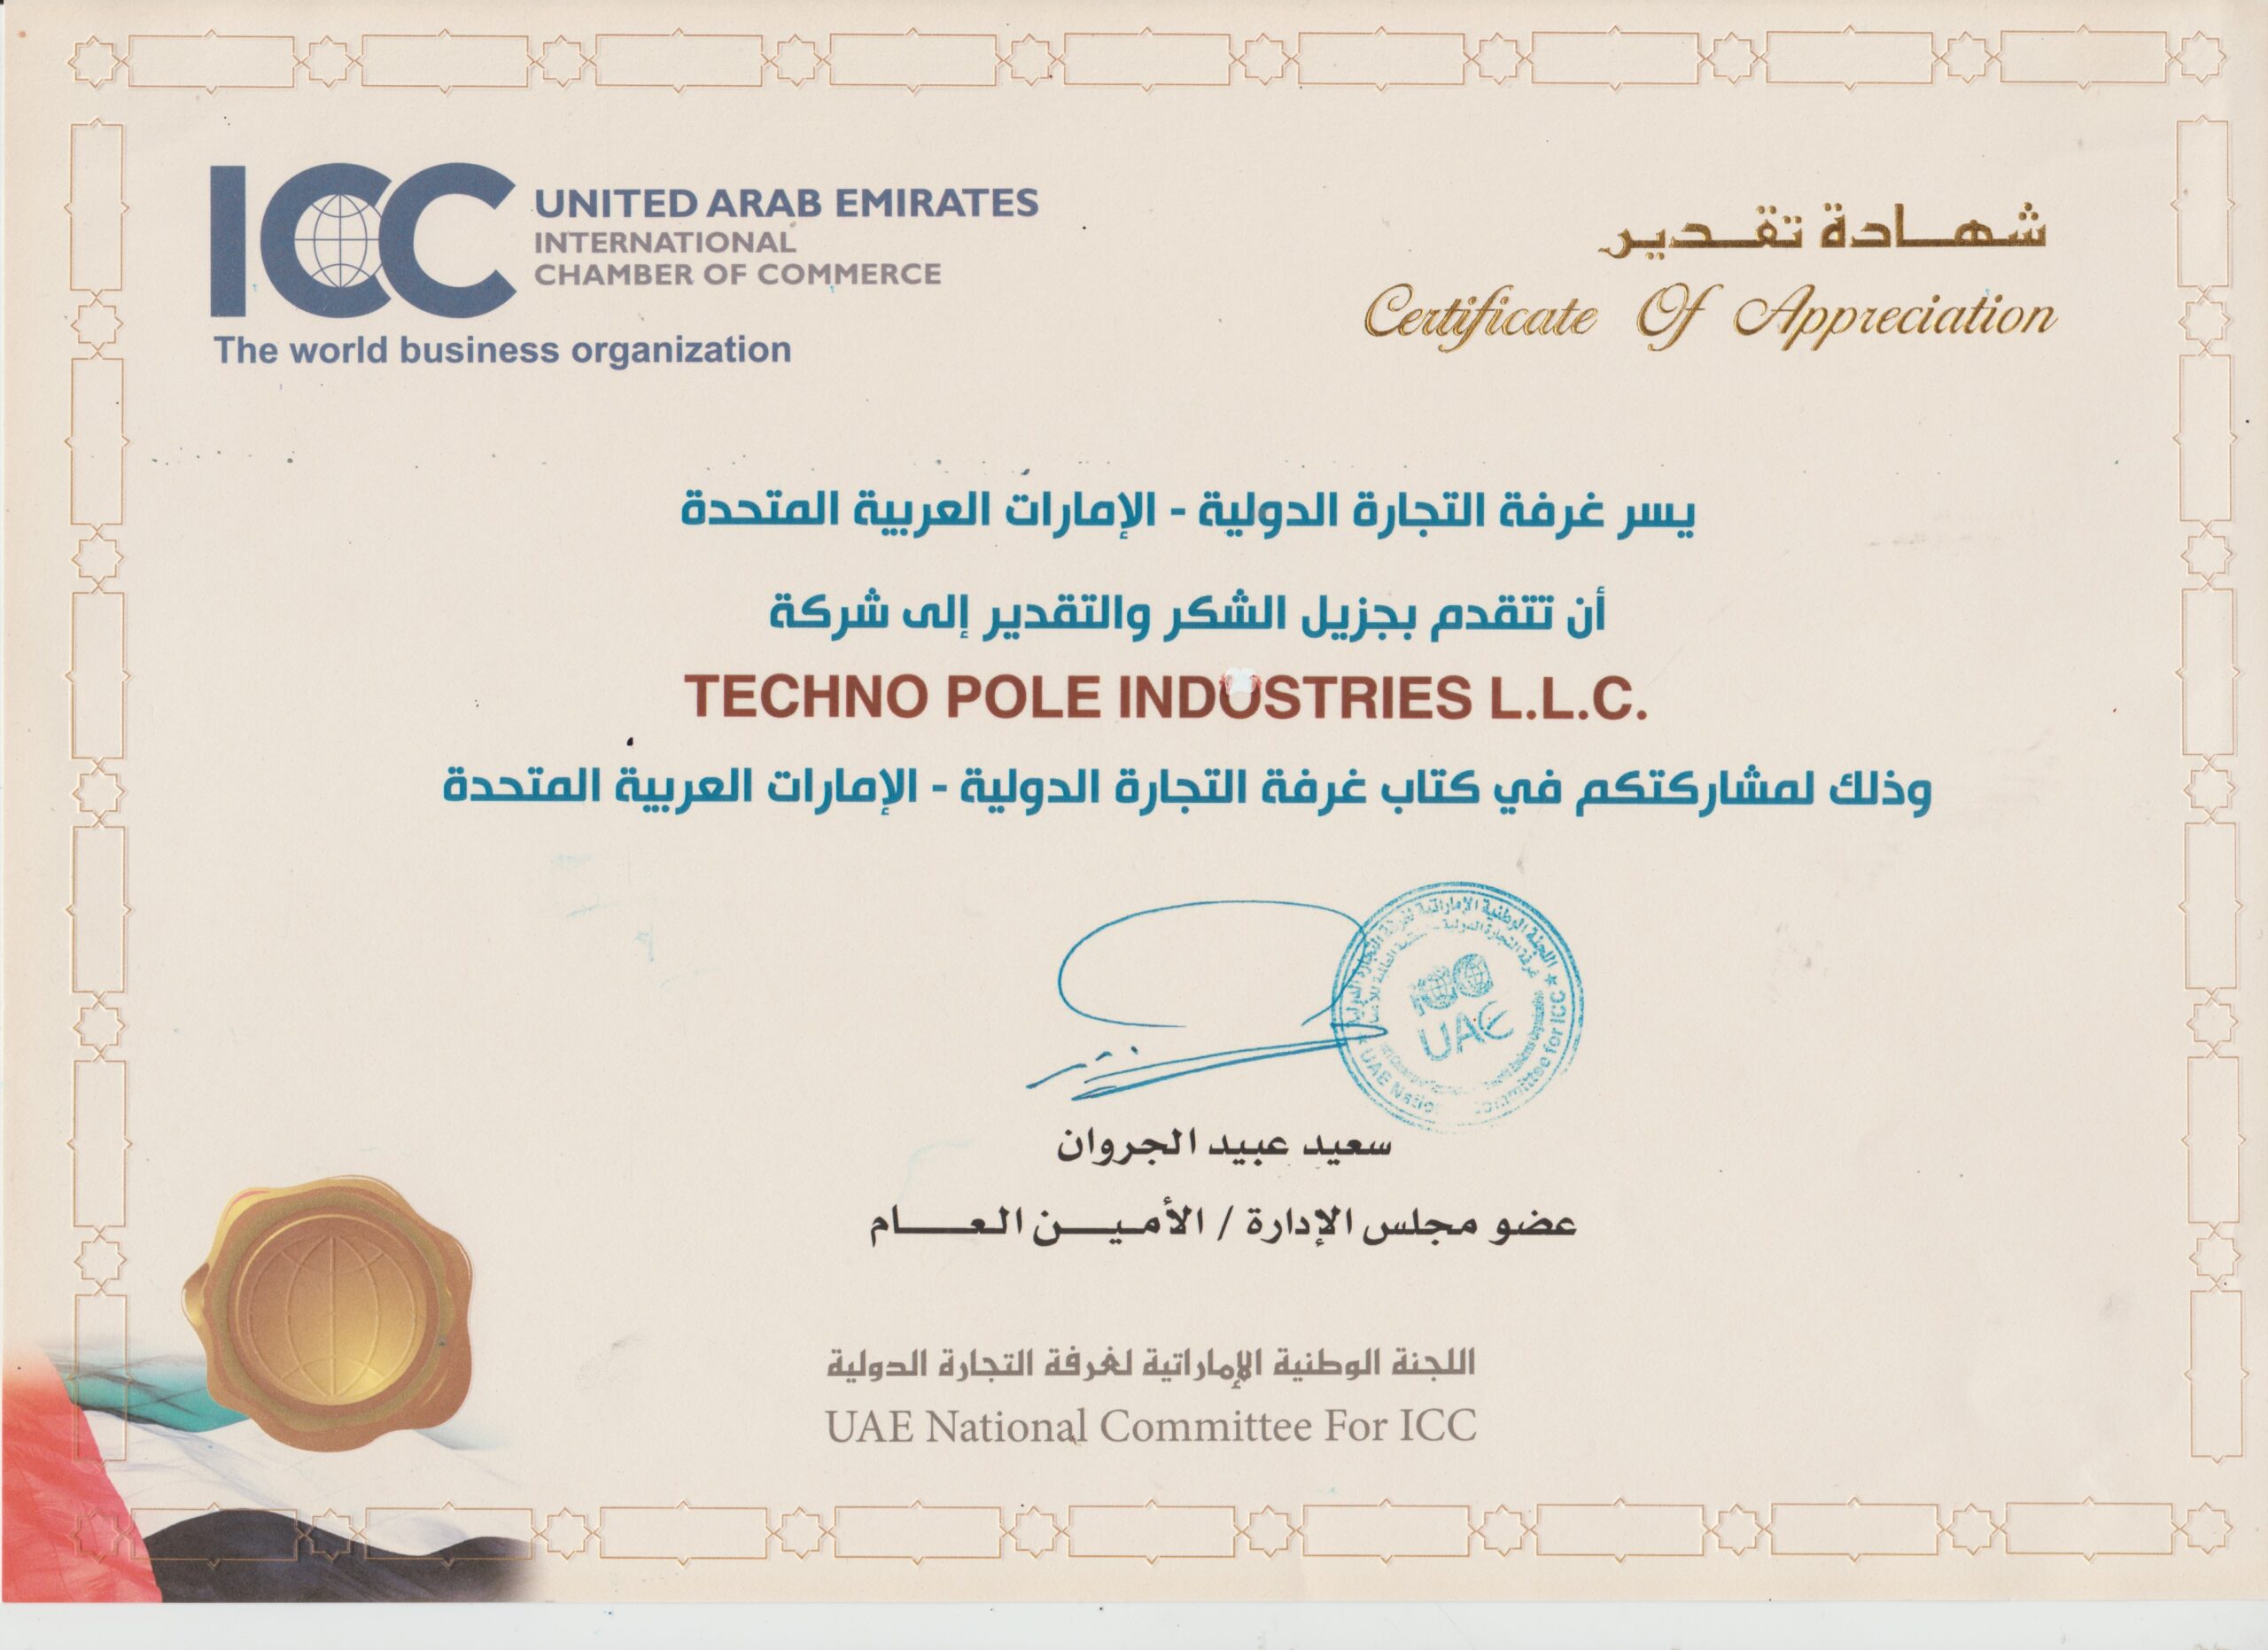 ICC Certificate